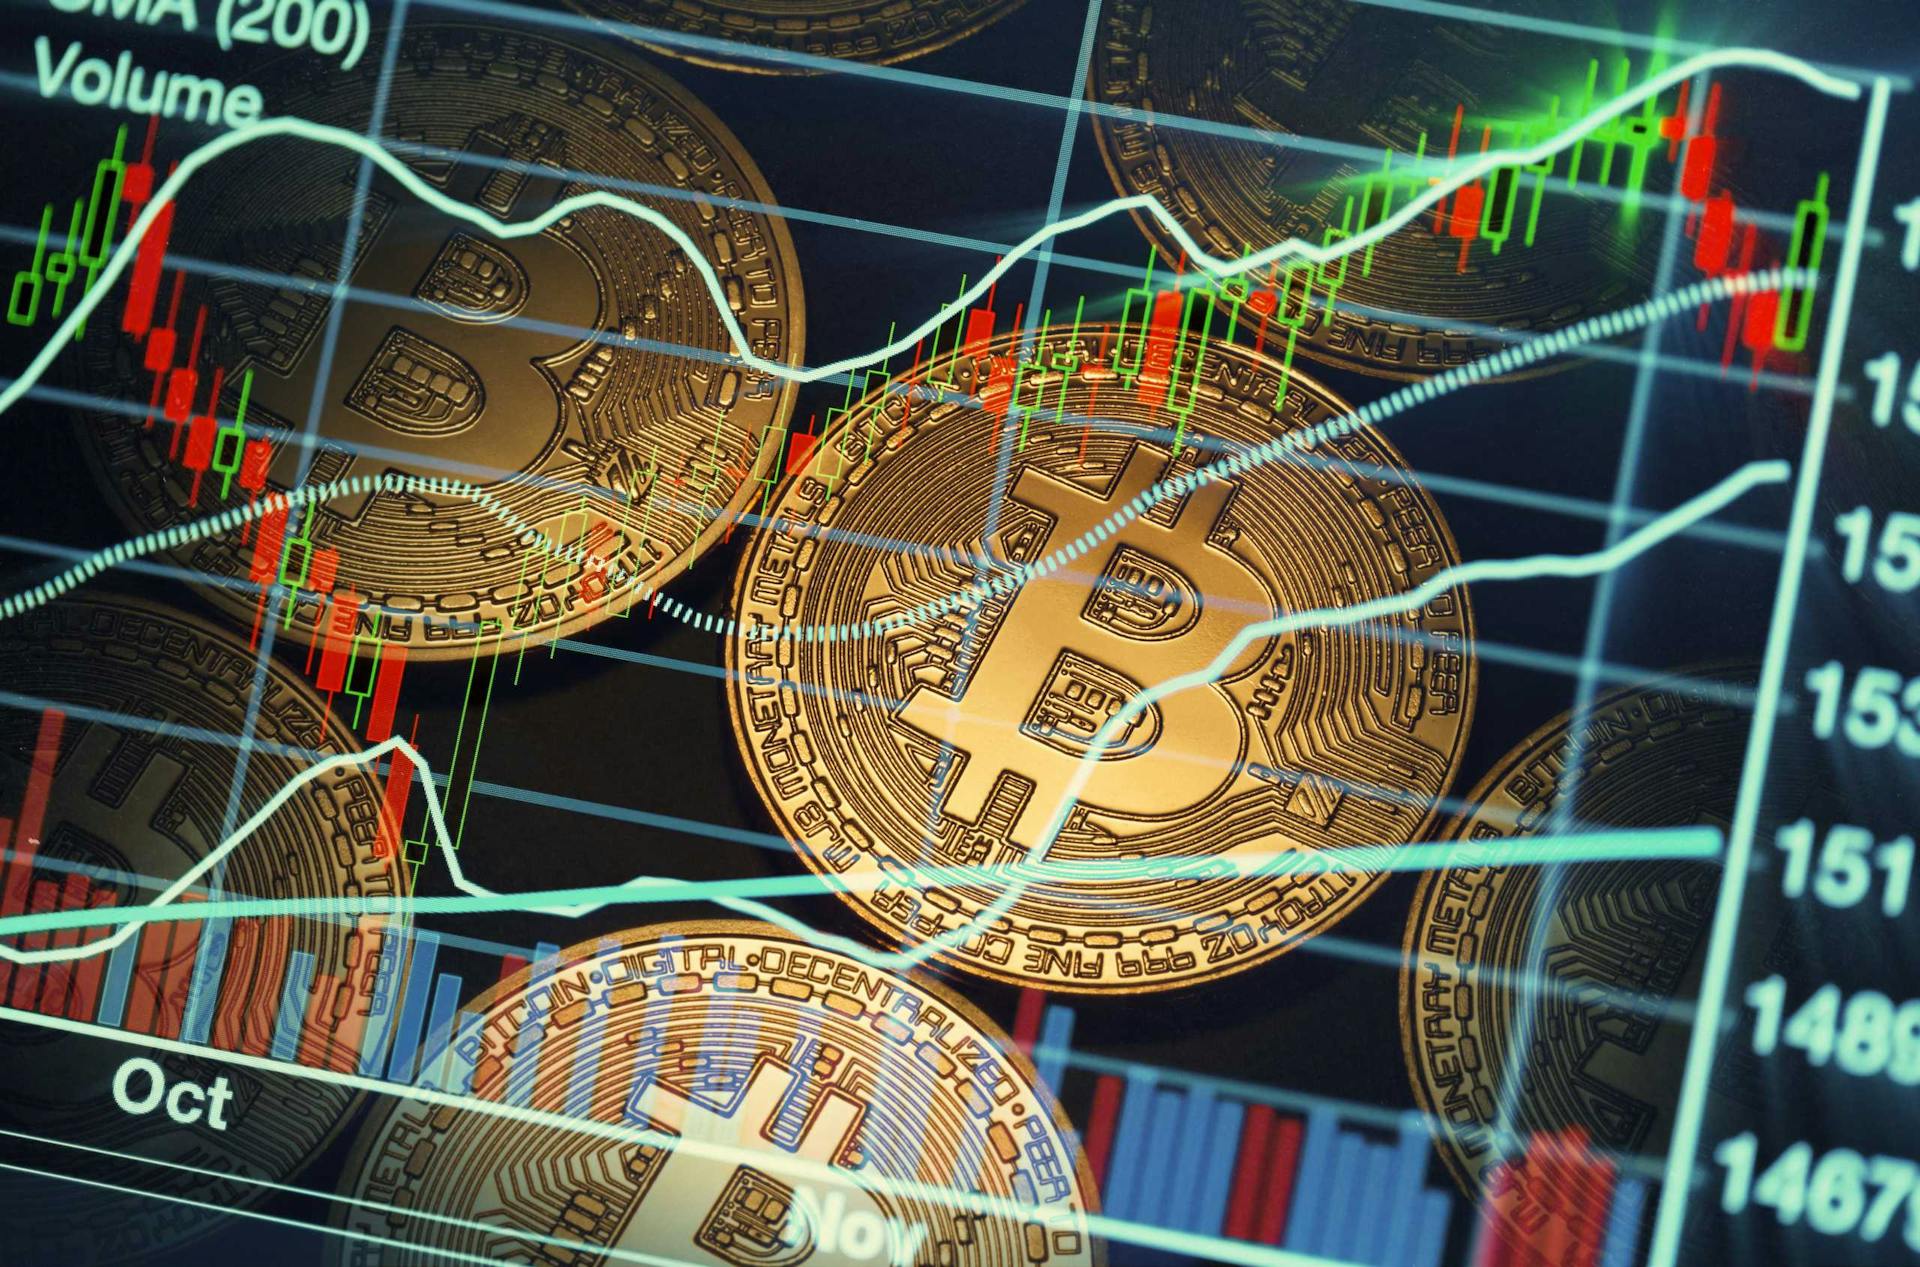 Wiener Börse: Erstmalige Zulassung eines Bitcoin-Produkts für den Handel im geregelten Markt